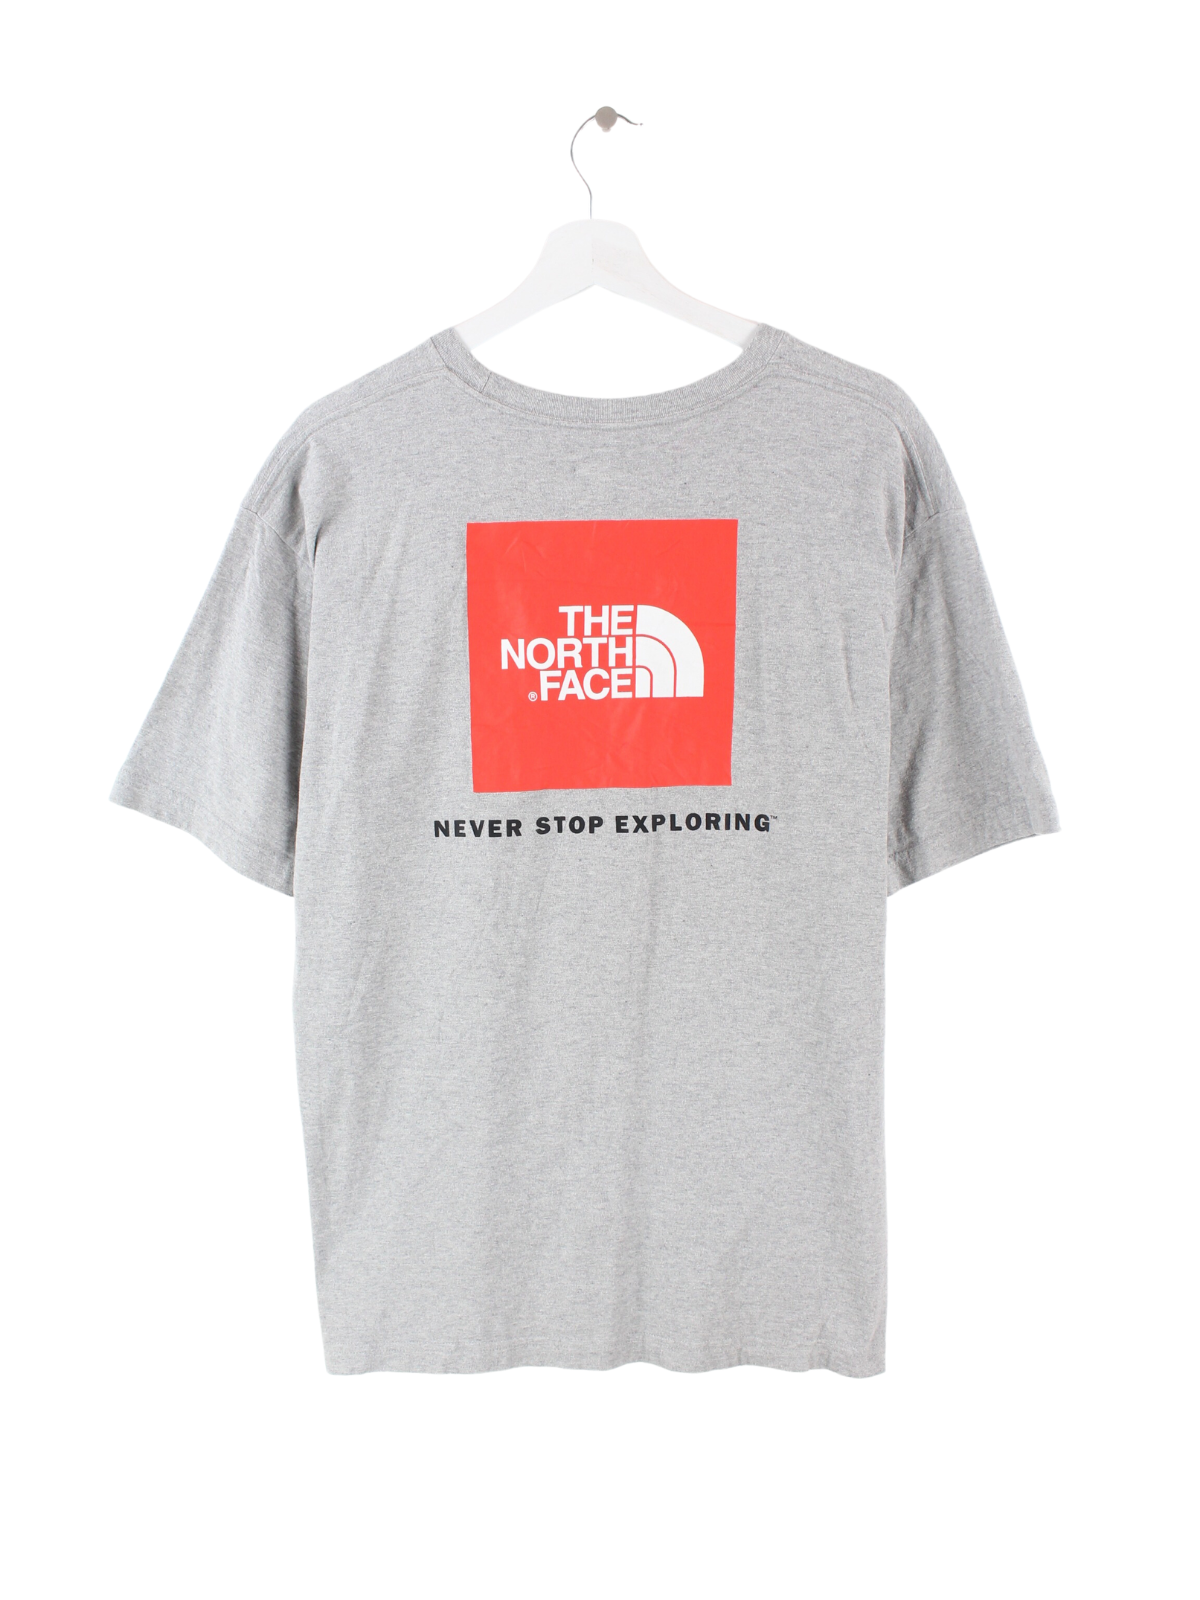 The North Face Print T-Shirt Grau L